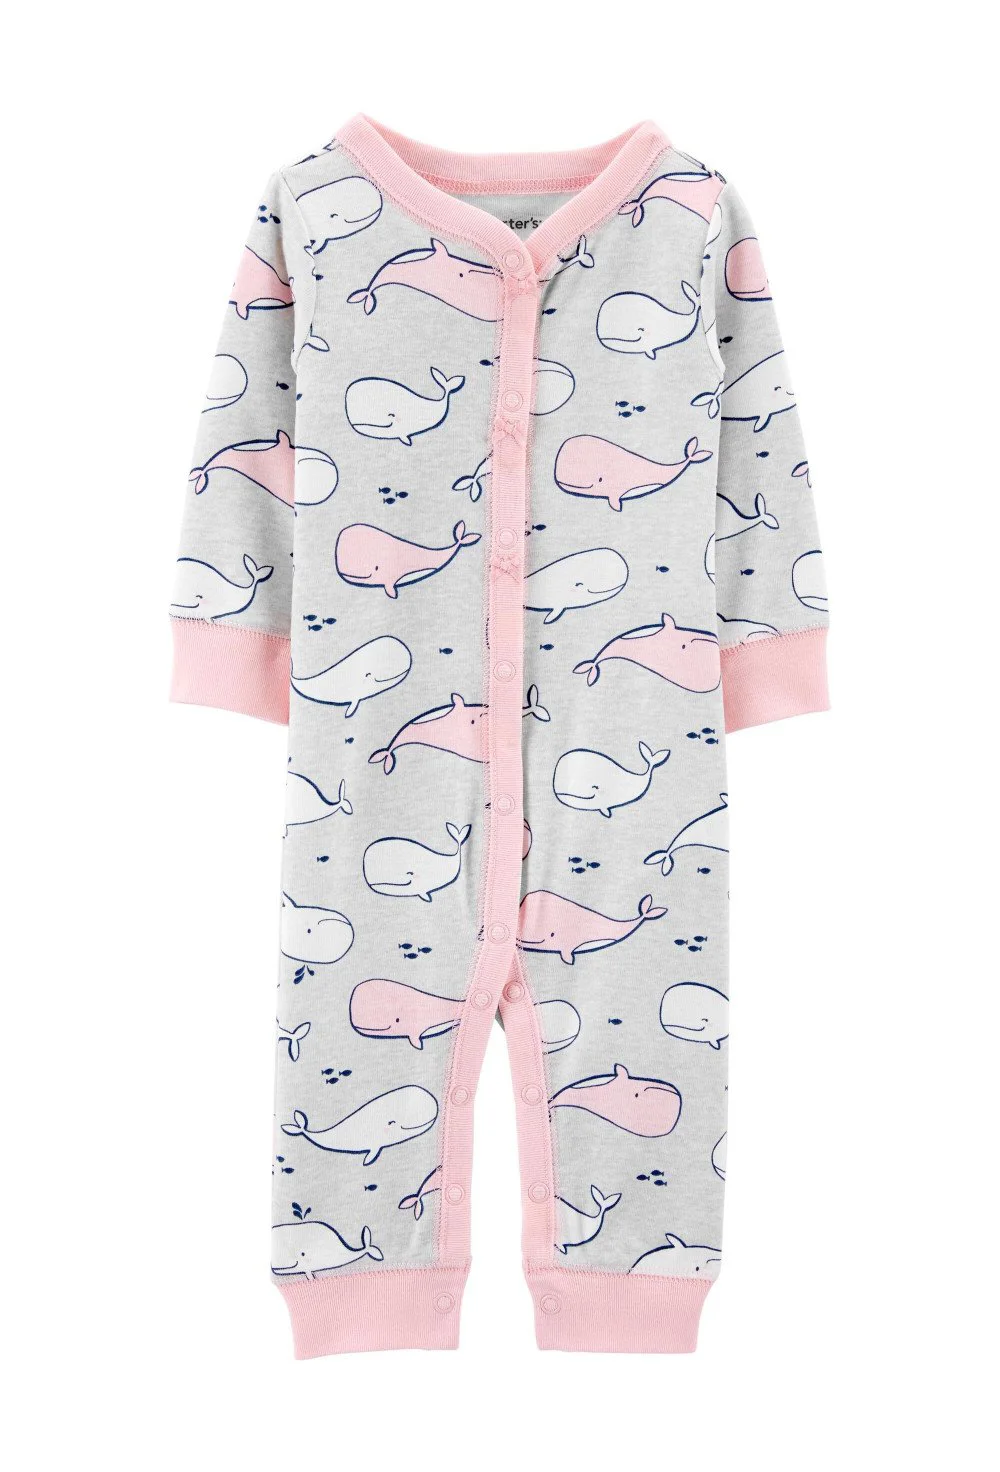 Carter's Pijama Balene